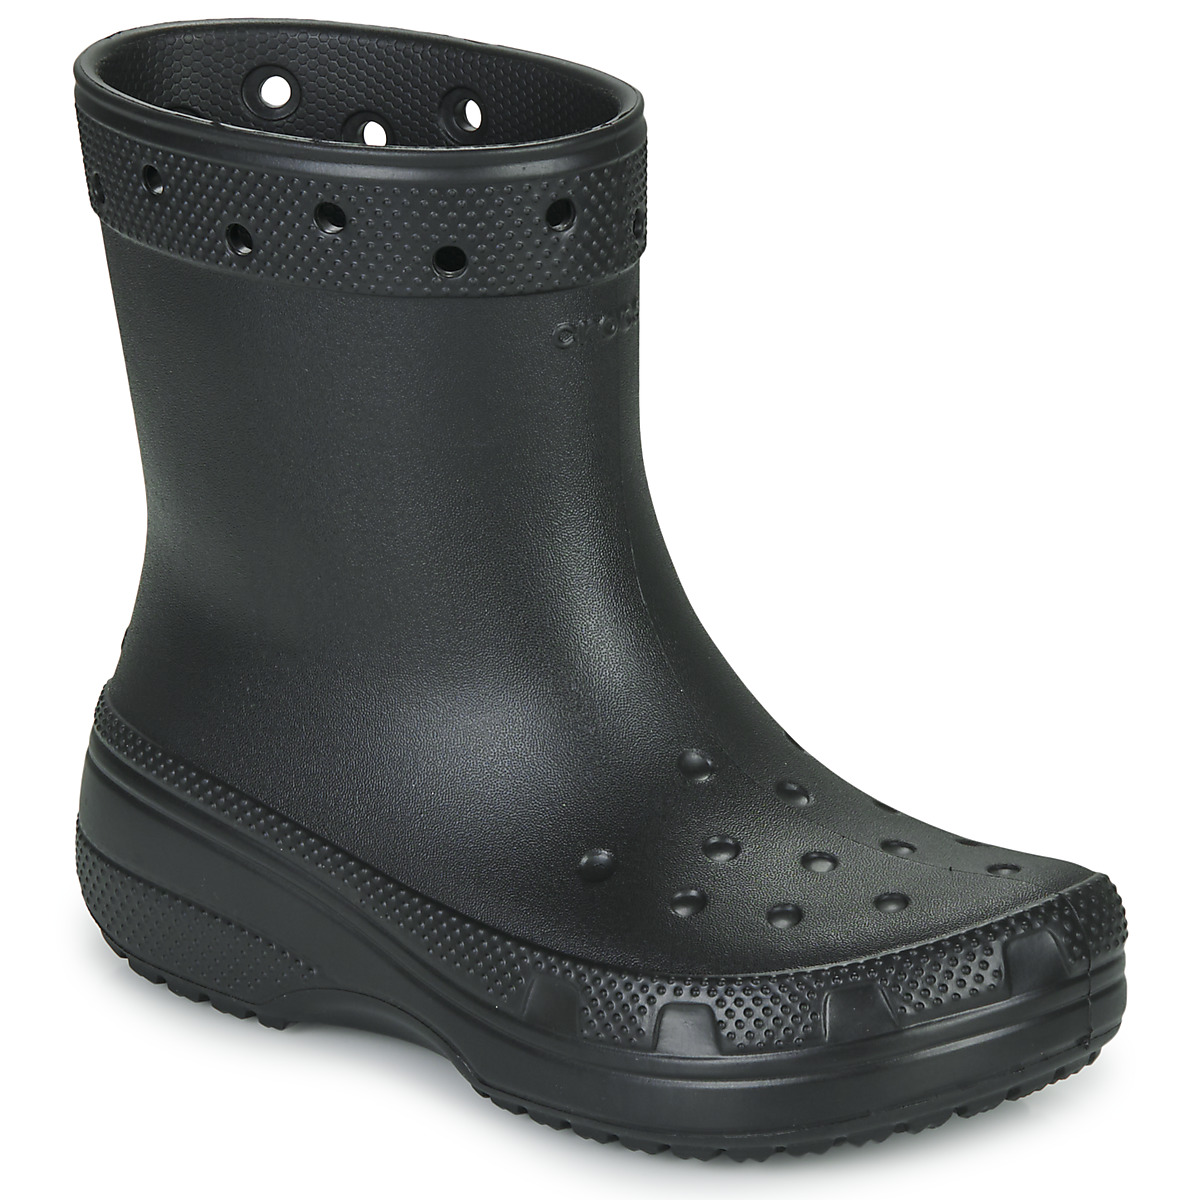 Παπούτσια Μπότες βροχής Crocs Classic Rain Boot Black